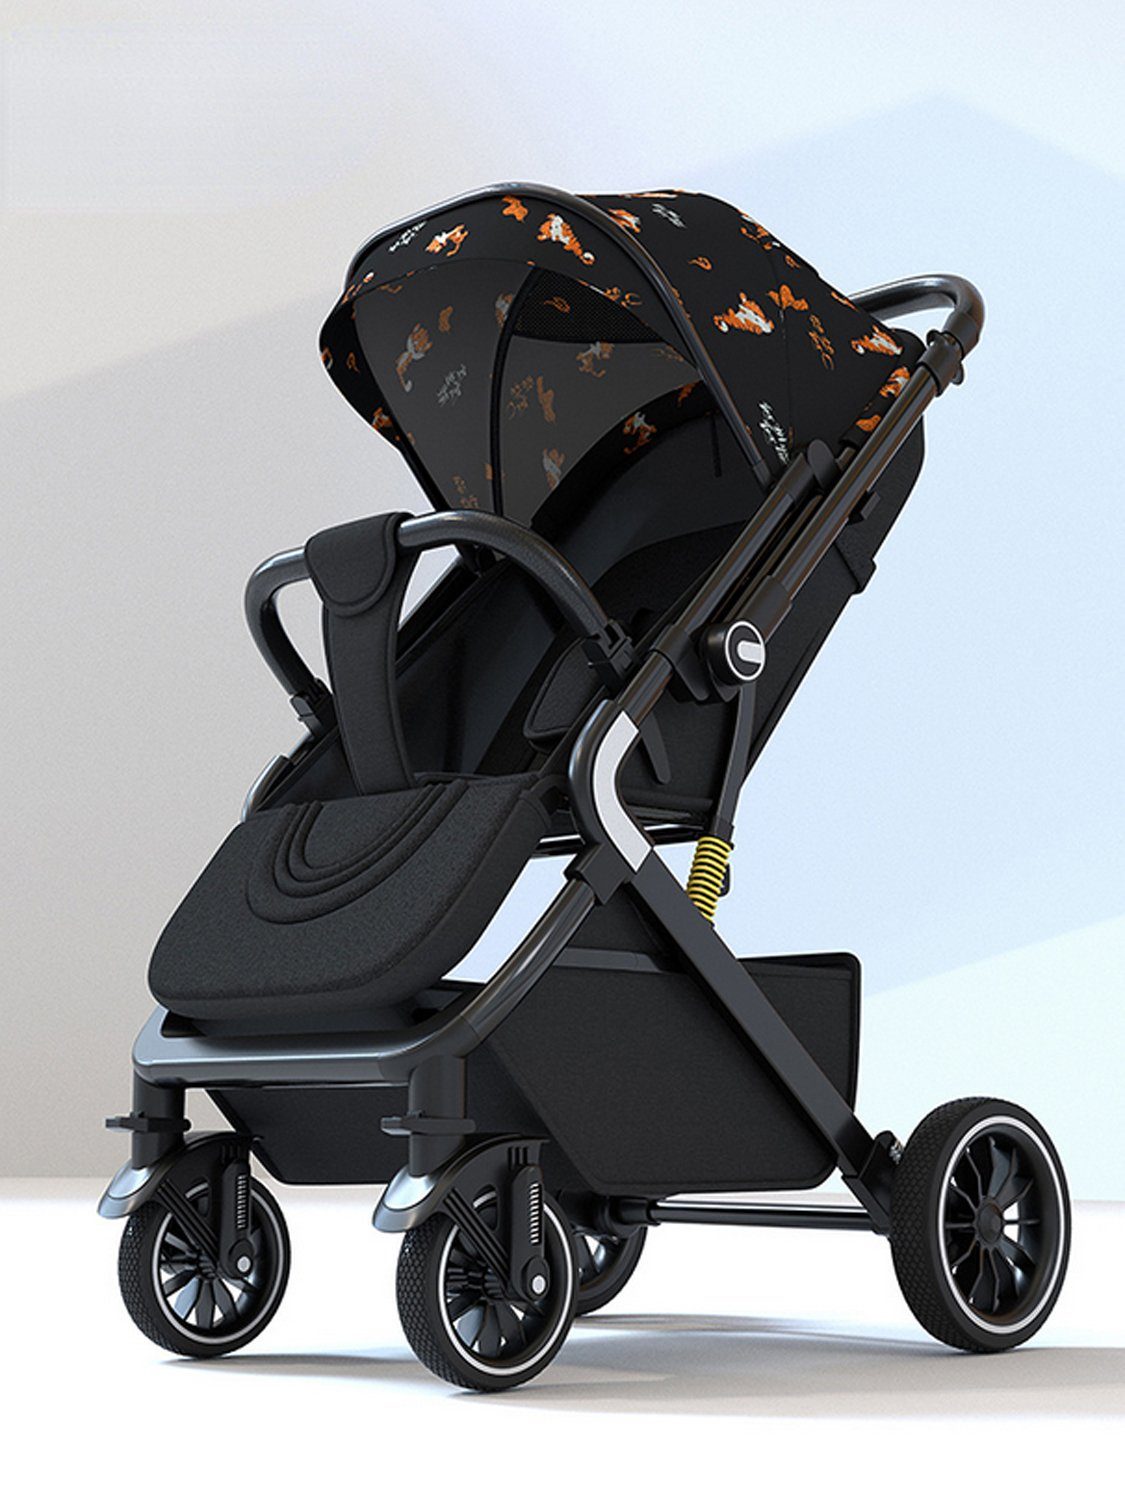 TPFLiving Kinder-Buggy Kinderwagen Buggy Babywanne 5-Punkt-Sicherheitsgurt mit Sonnenschutz, verstellbare Rückenlehne, wendbare Babyschale, Schwarz-Orange